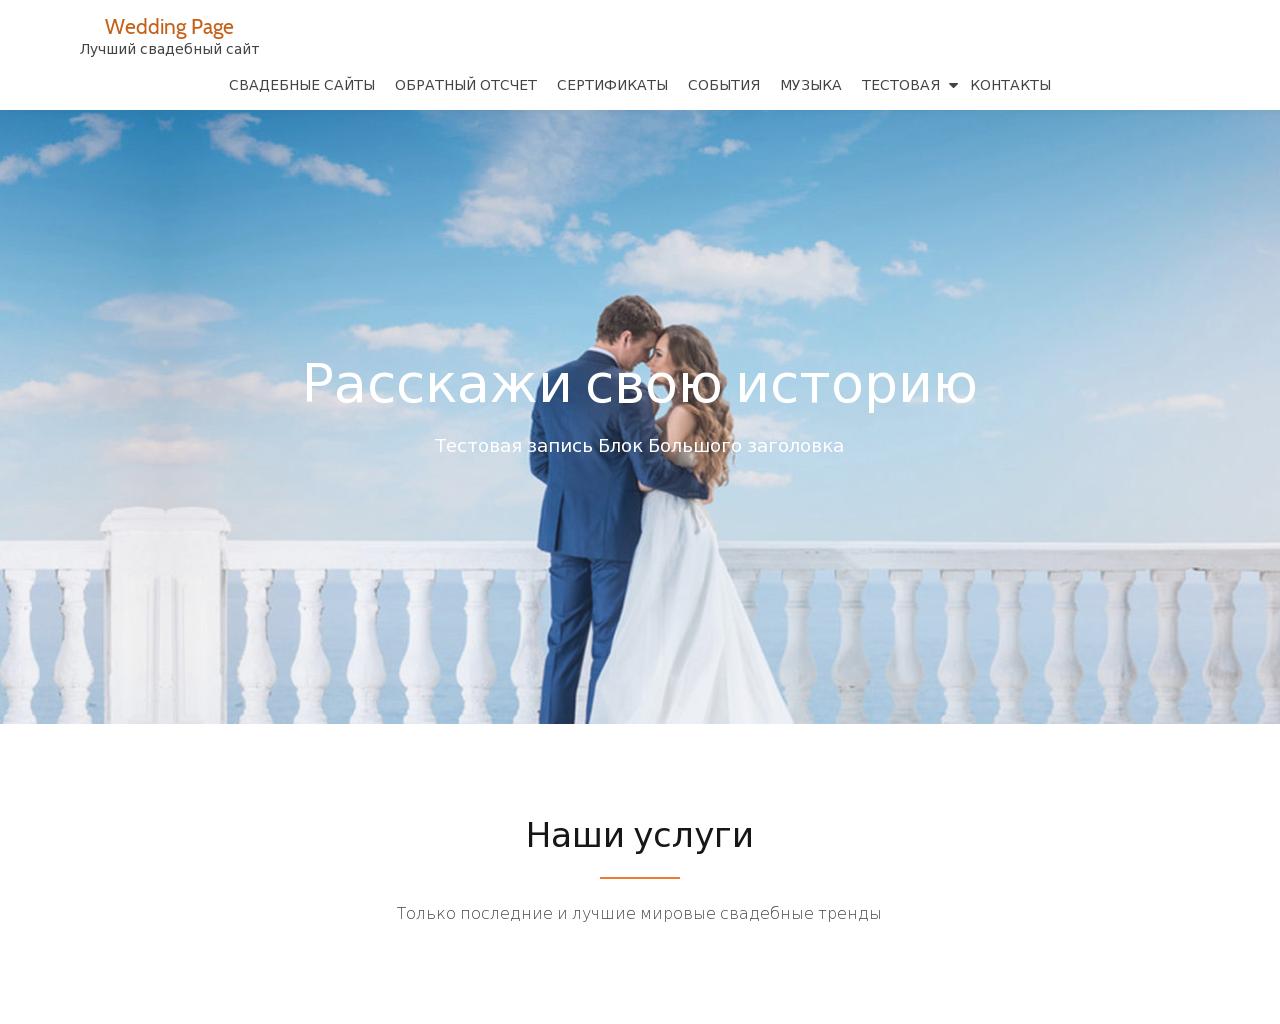 Изображение сайта wedding-page.ru в разрешении 1280x1024